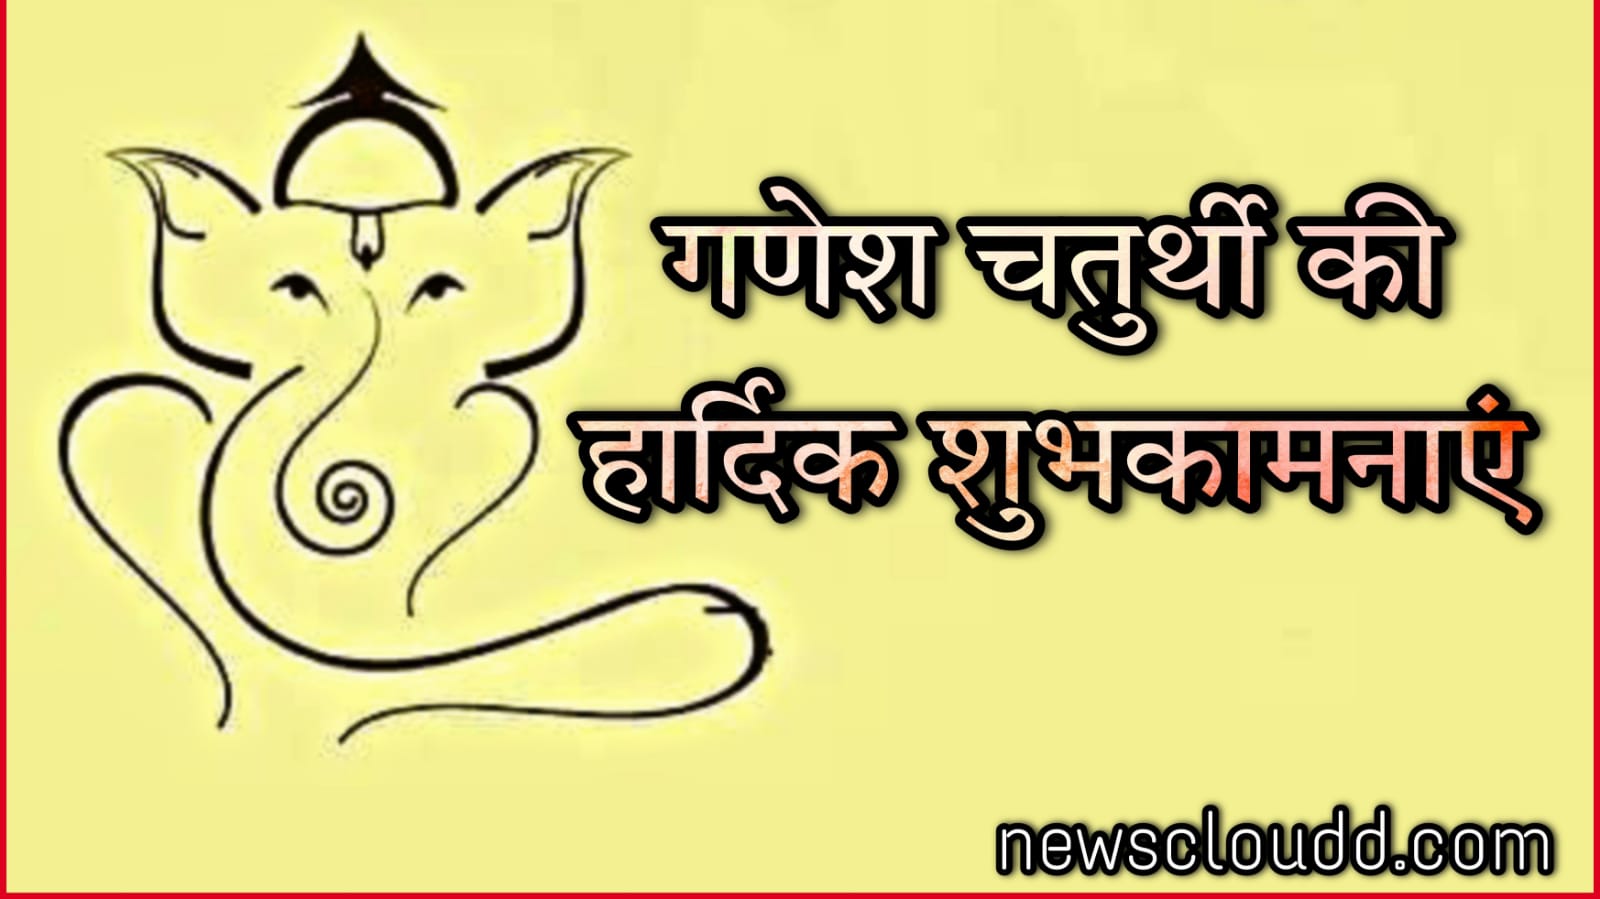 Ganesh Chaturthi 2021 Wishes In Hindi : गणेश चतुर्थी पर अपनों को भेजें ये गणेश संदेश, फोटो और कोट्स